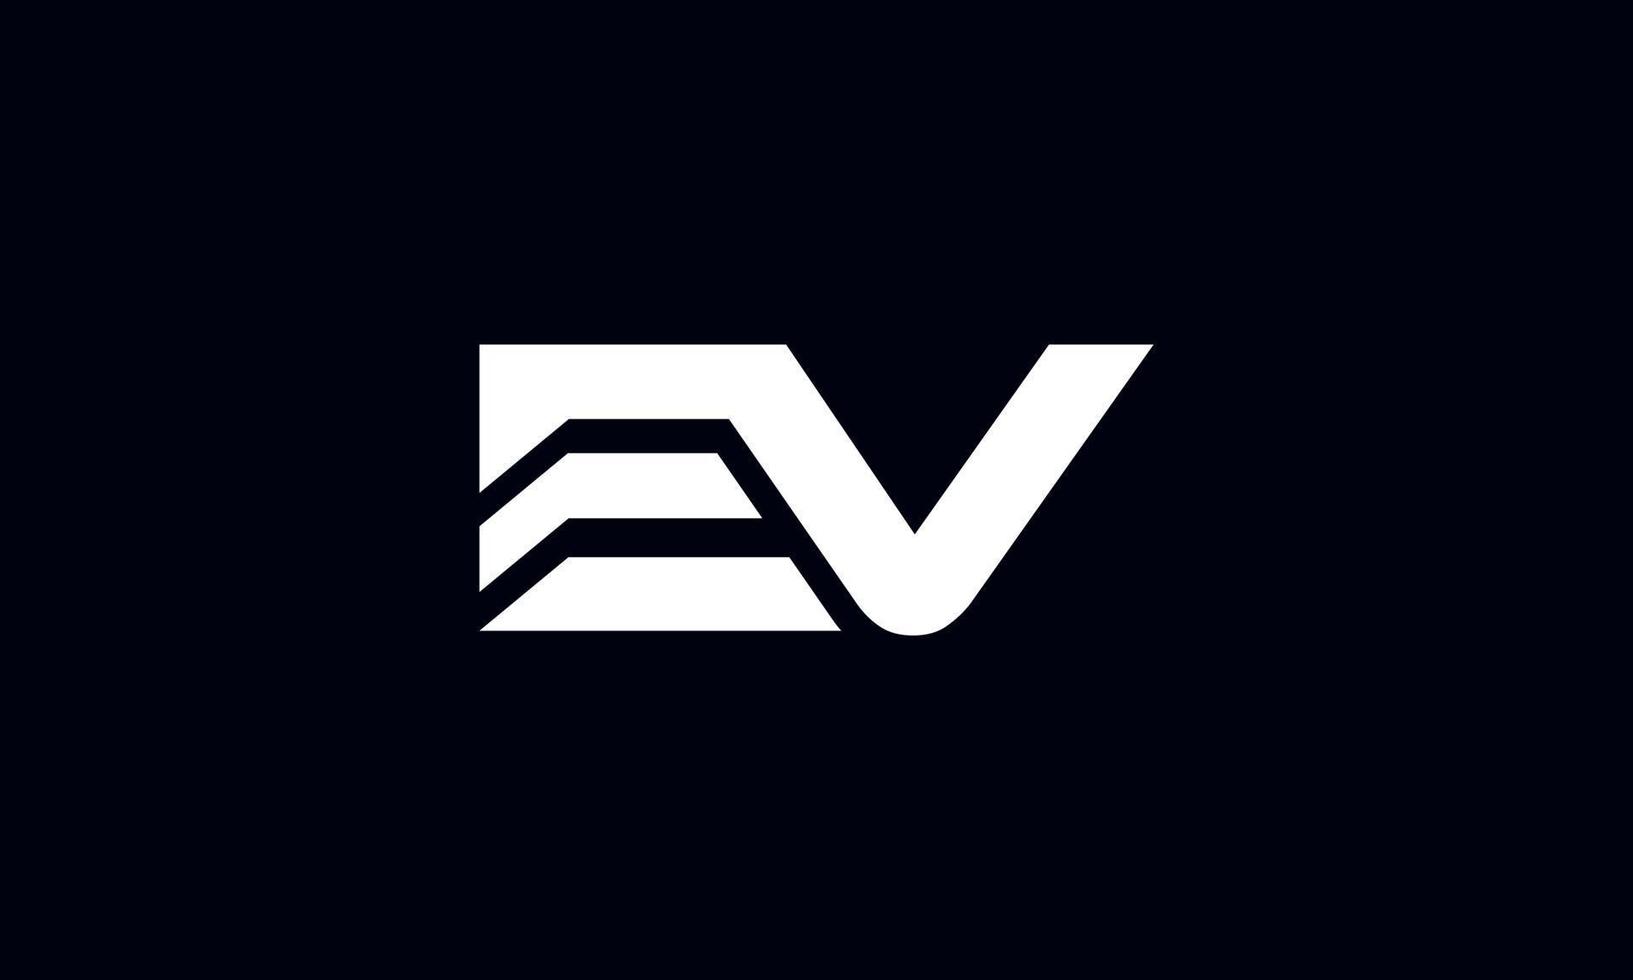 diseño de logotipo ev. diseño inicial del logotipo de la letra ev monograma vector diseño pro vector.